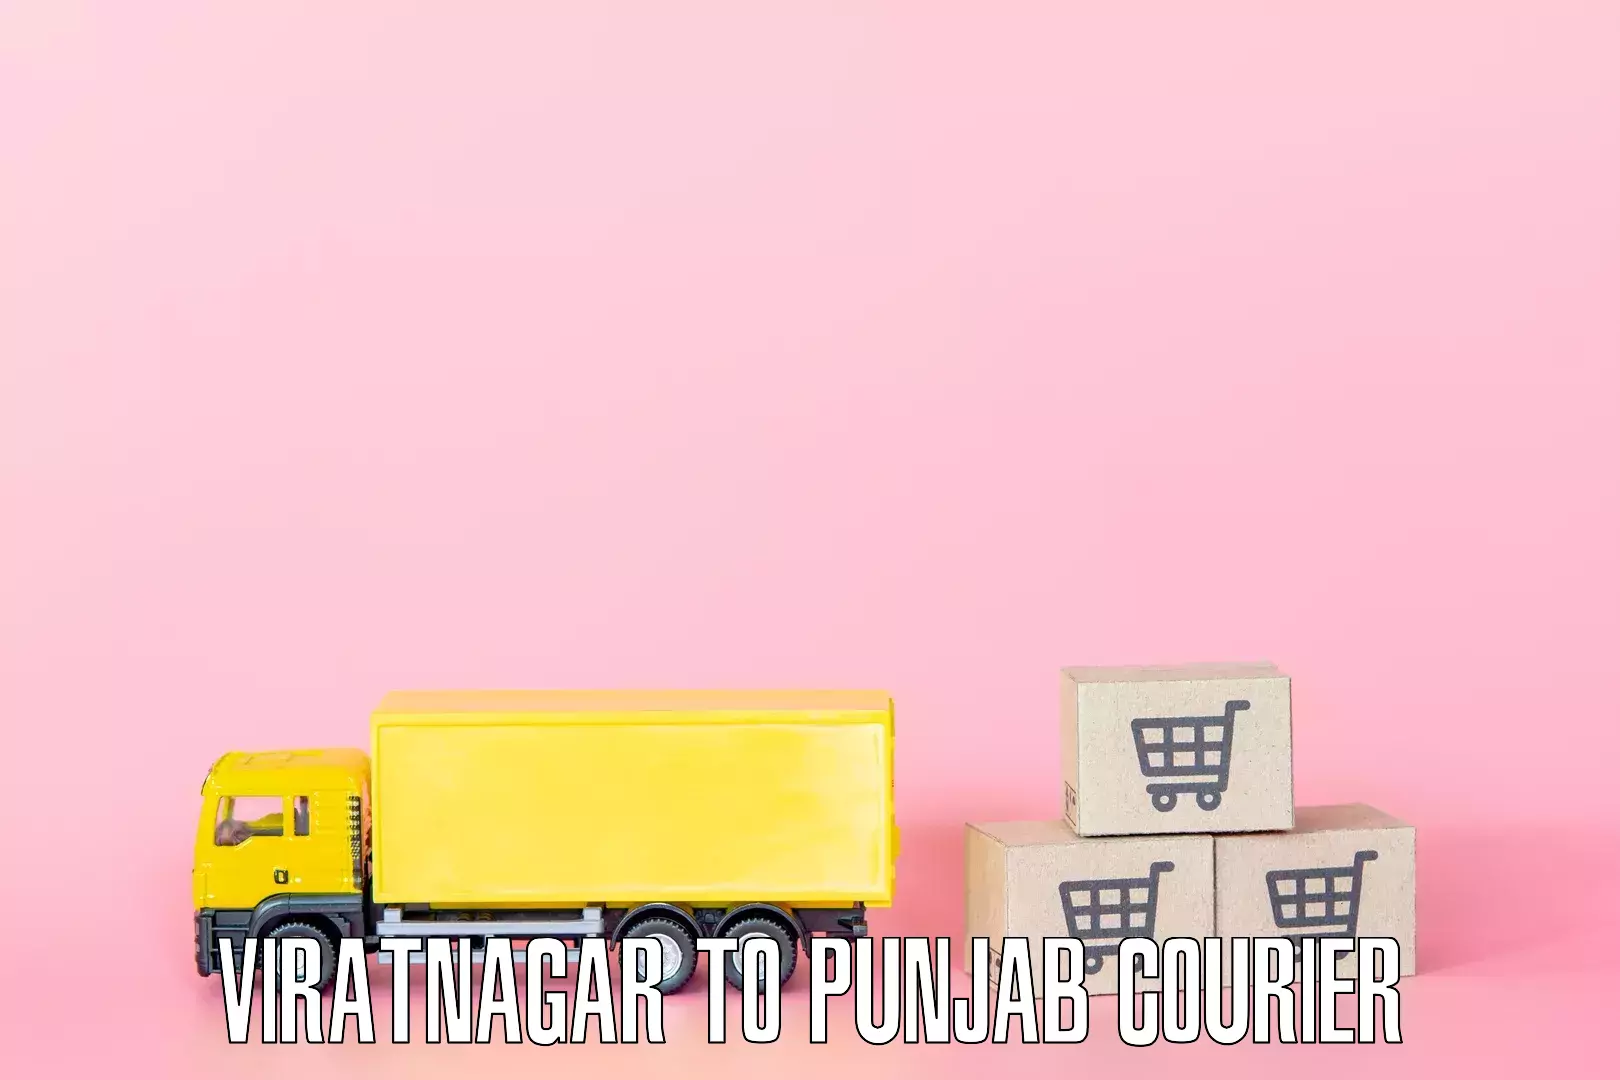 Quick household moving Viratnagar to Punjab